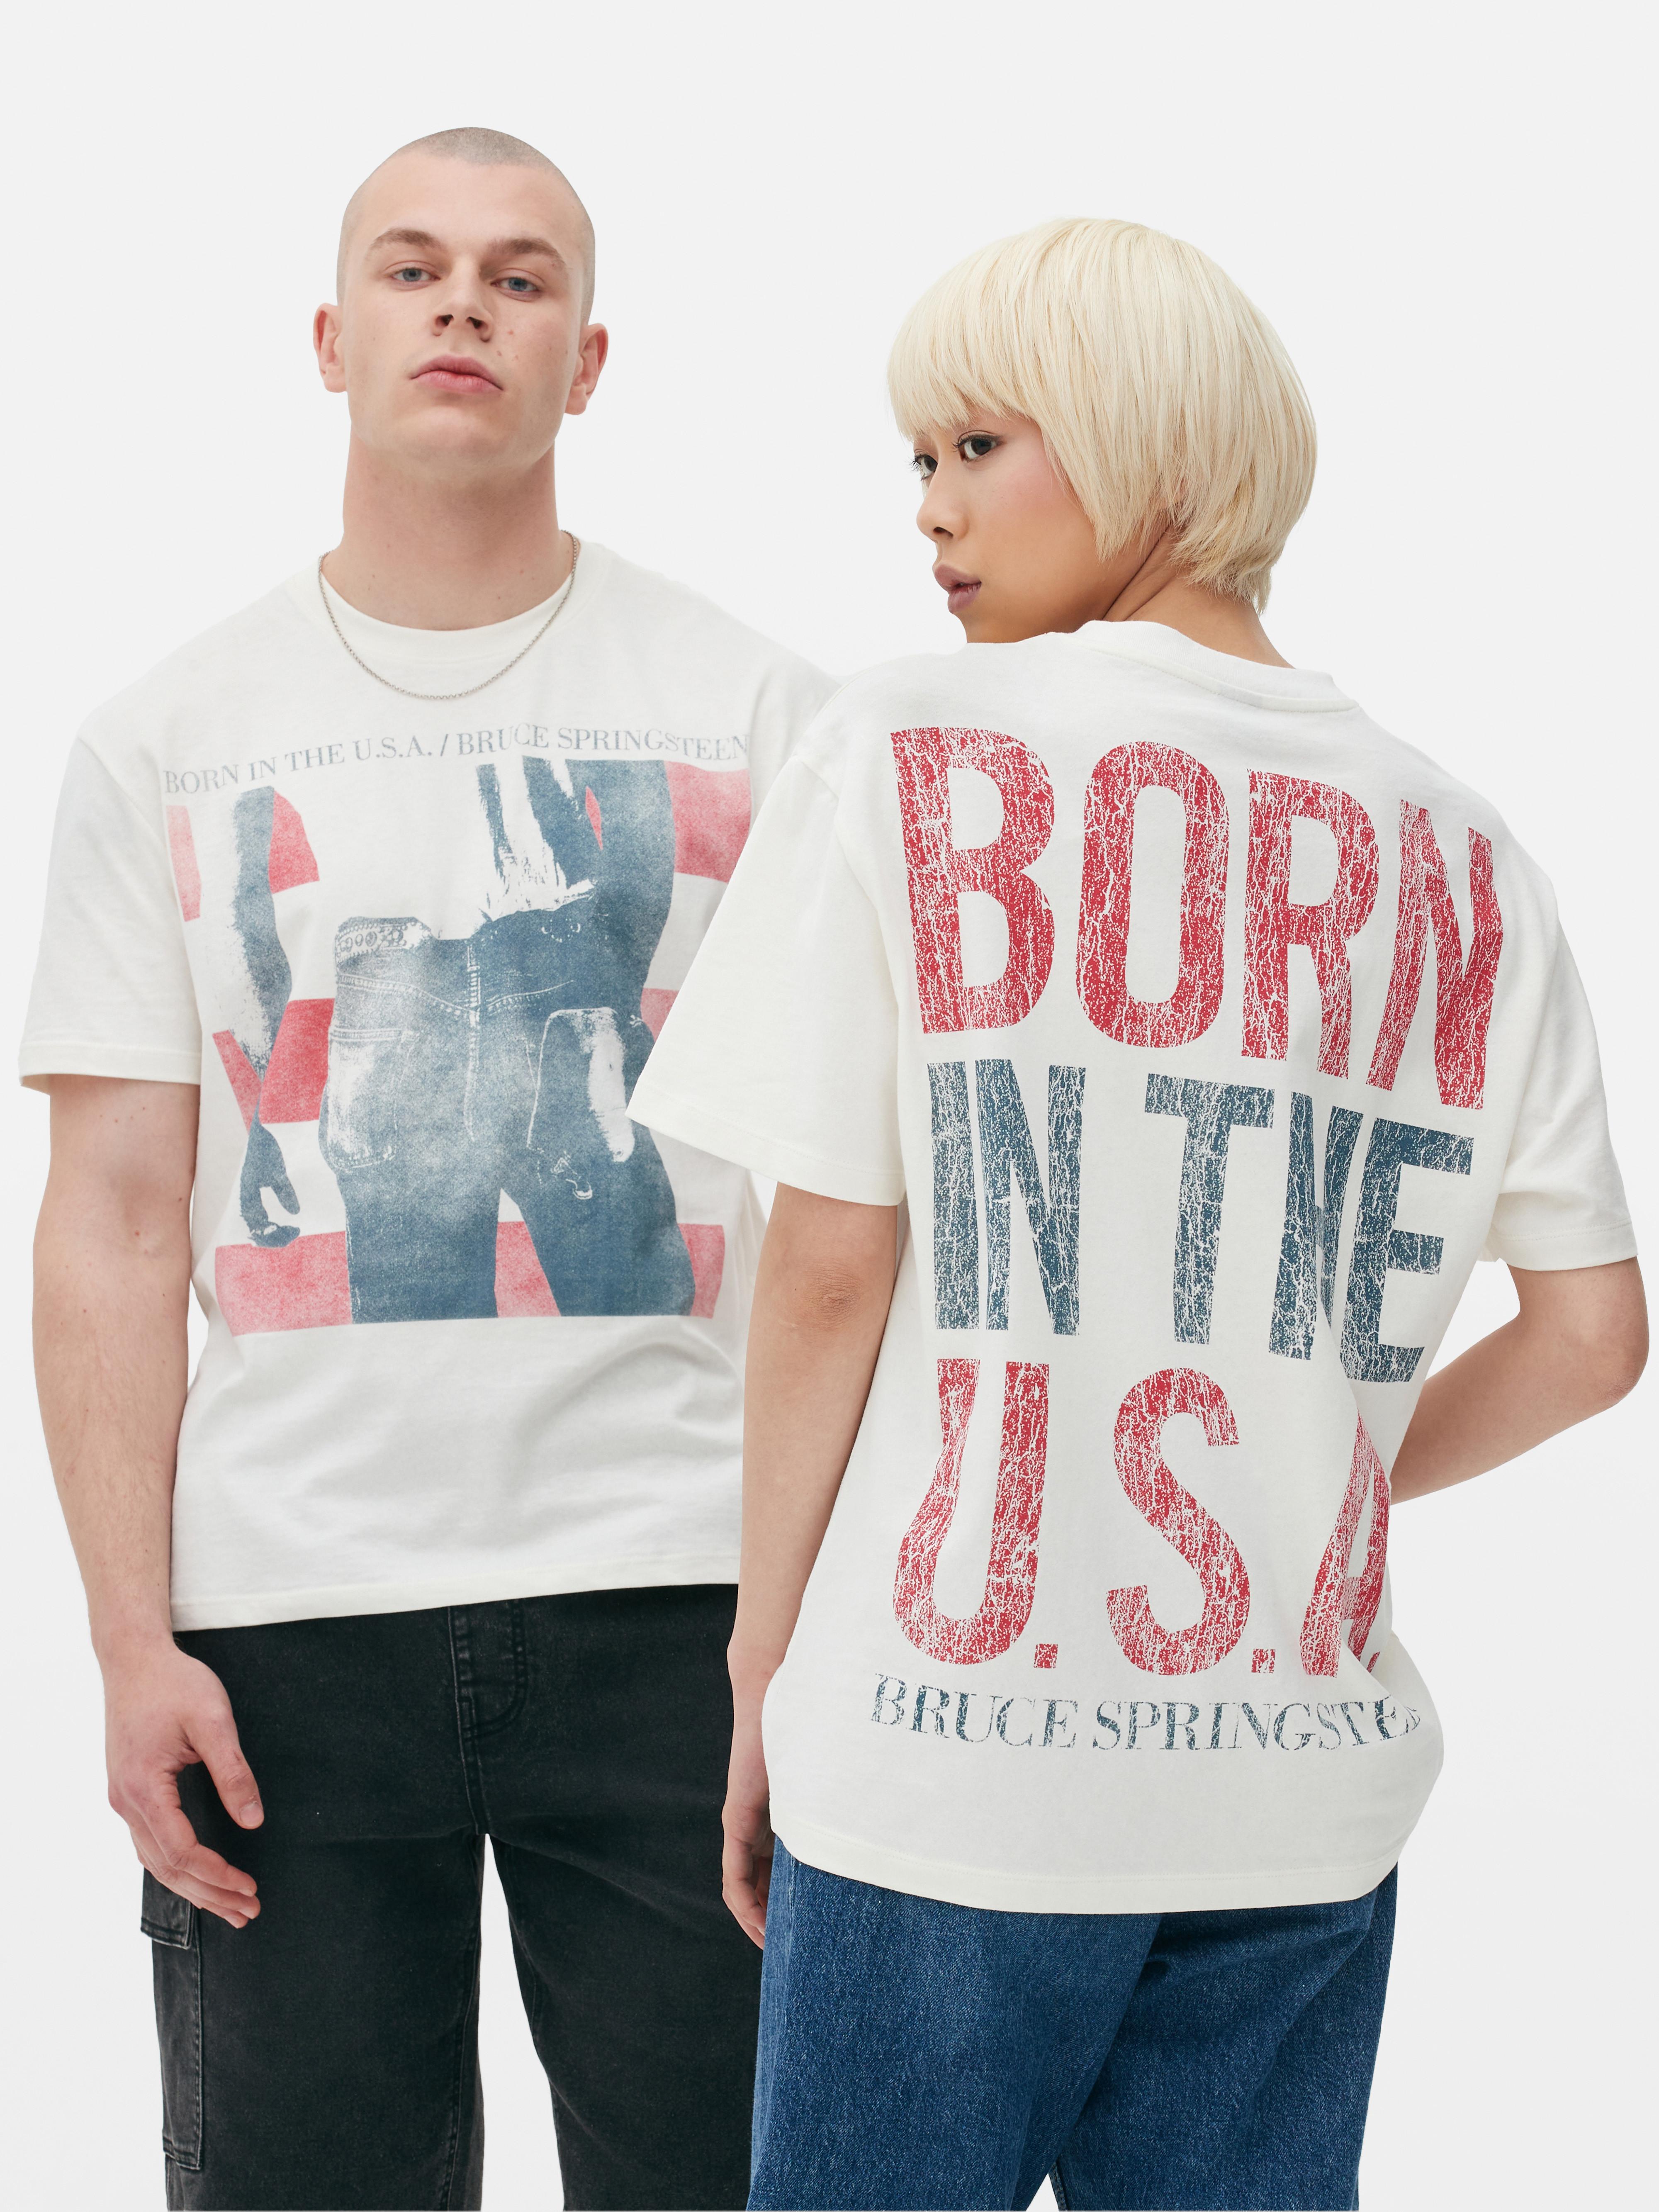 Camiseta «Born in the U.S.A.» de Bruce Springsteen